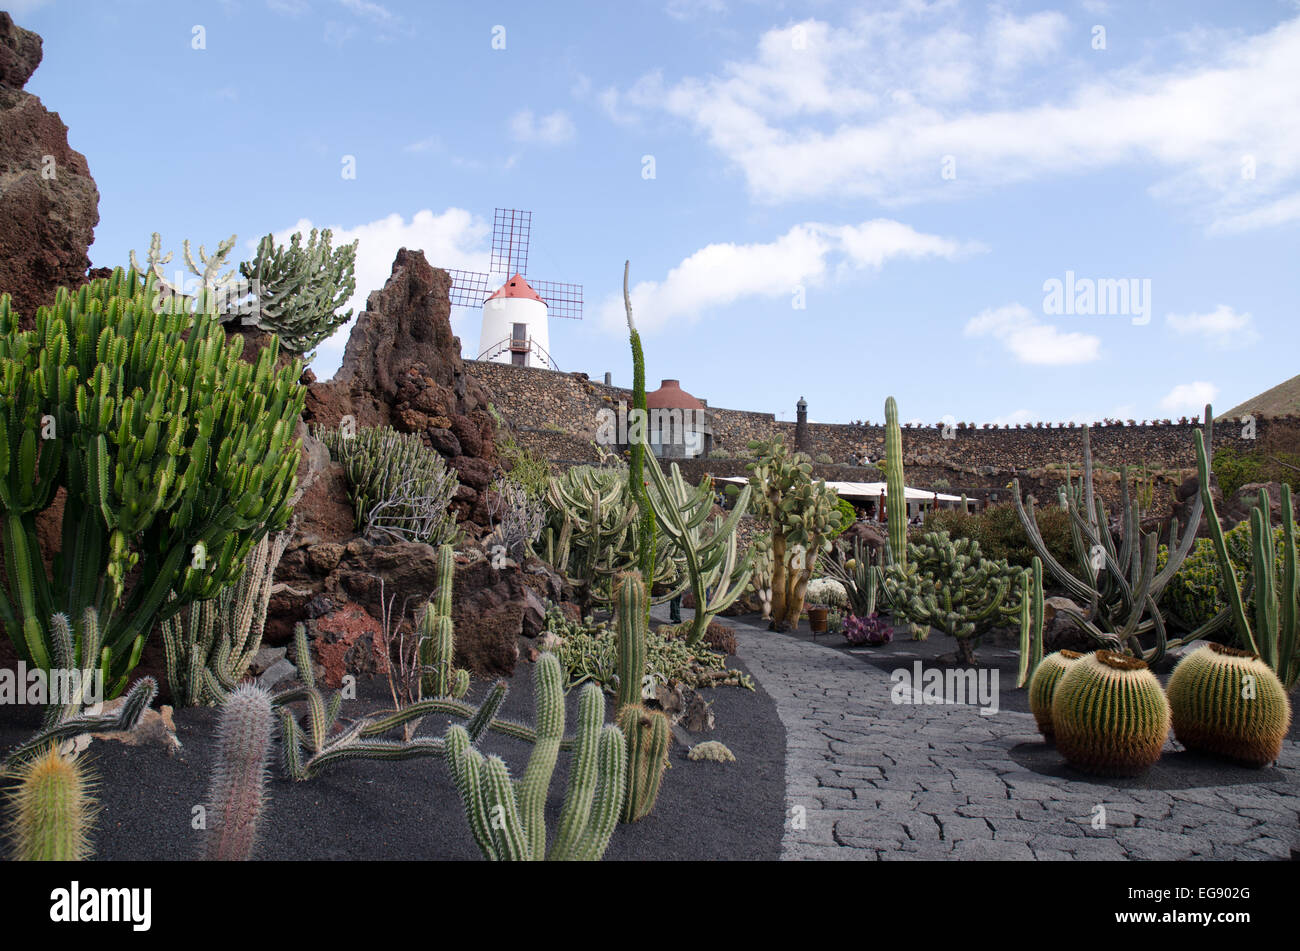 Le jardin de cactus El Jardin del Cactus conçu Lanzarote artiste Cesar Manrique. Banque D'Images